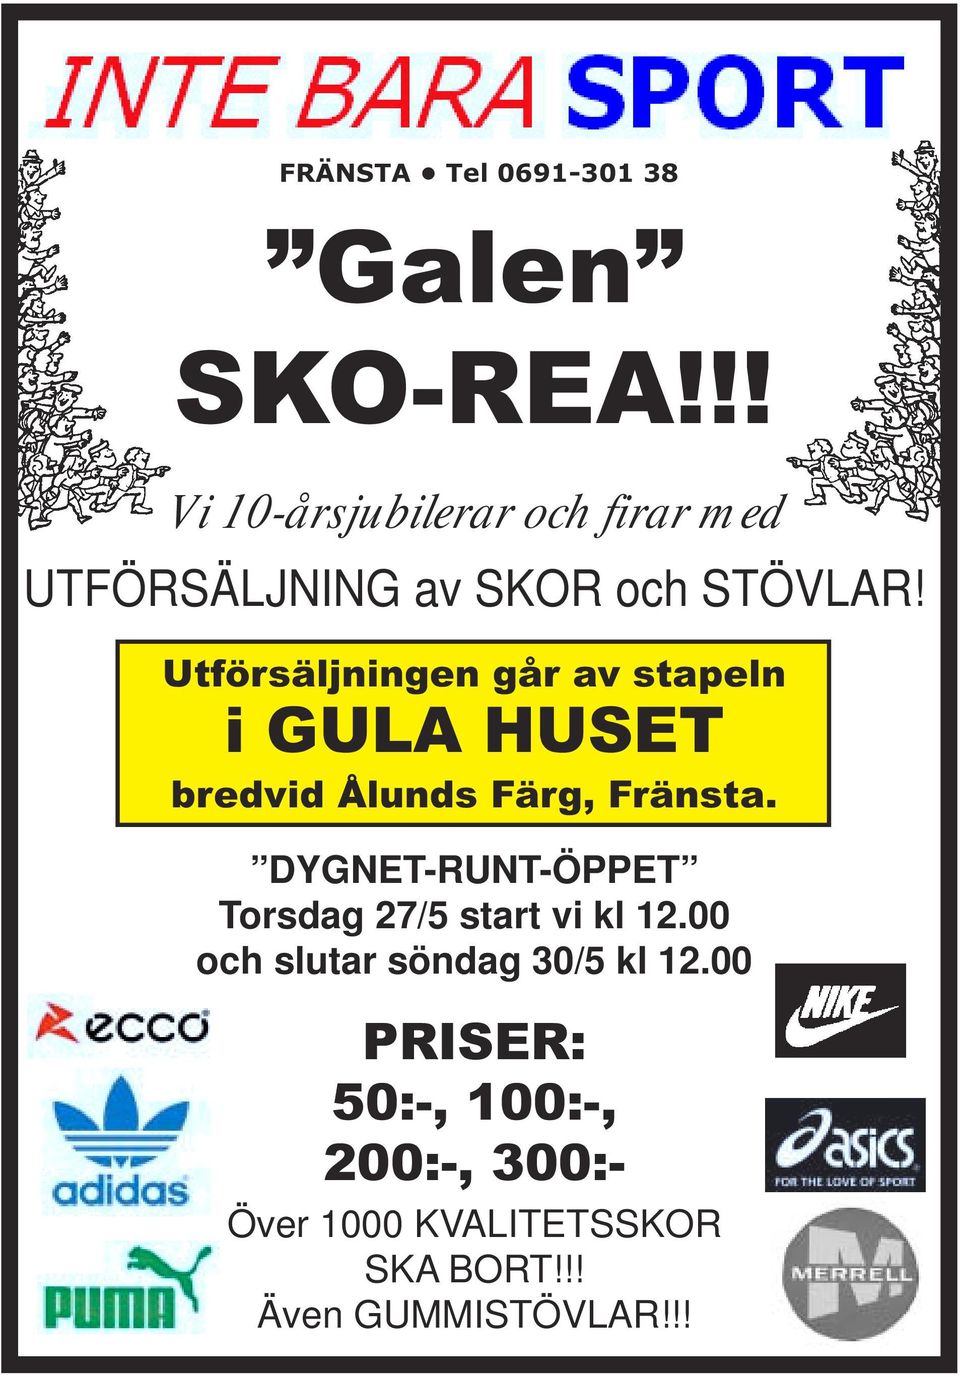 Utförsäljningen går av stapeln i GULA HUSET bredvid Ålunds Färg, Fränsta.